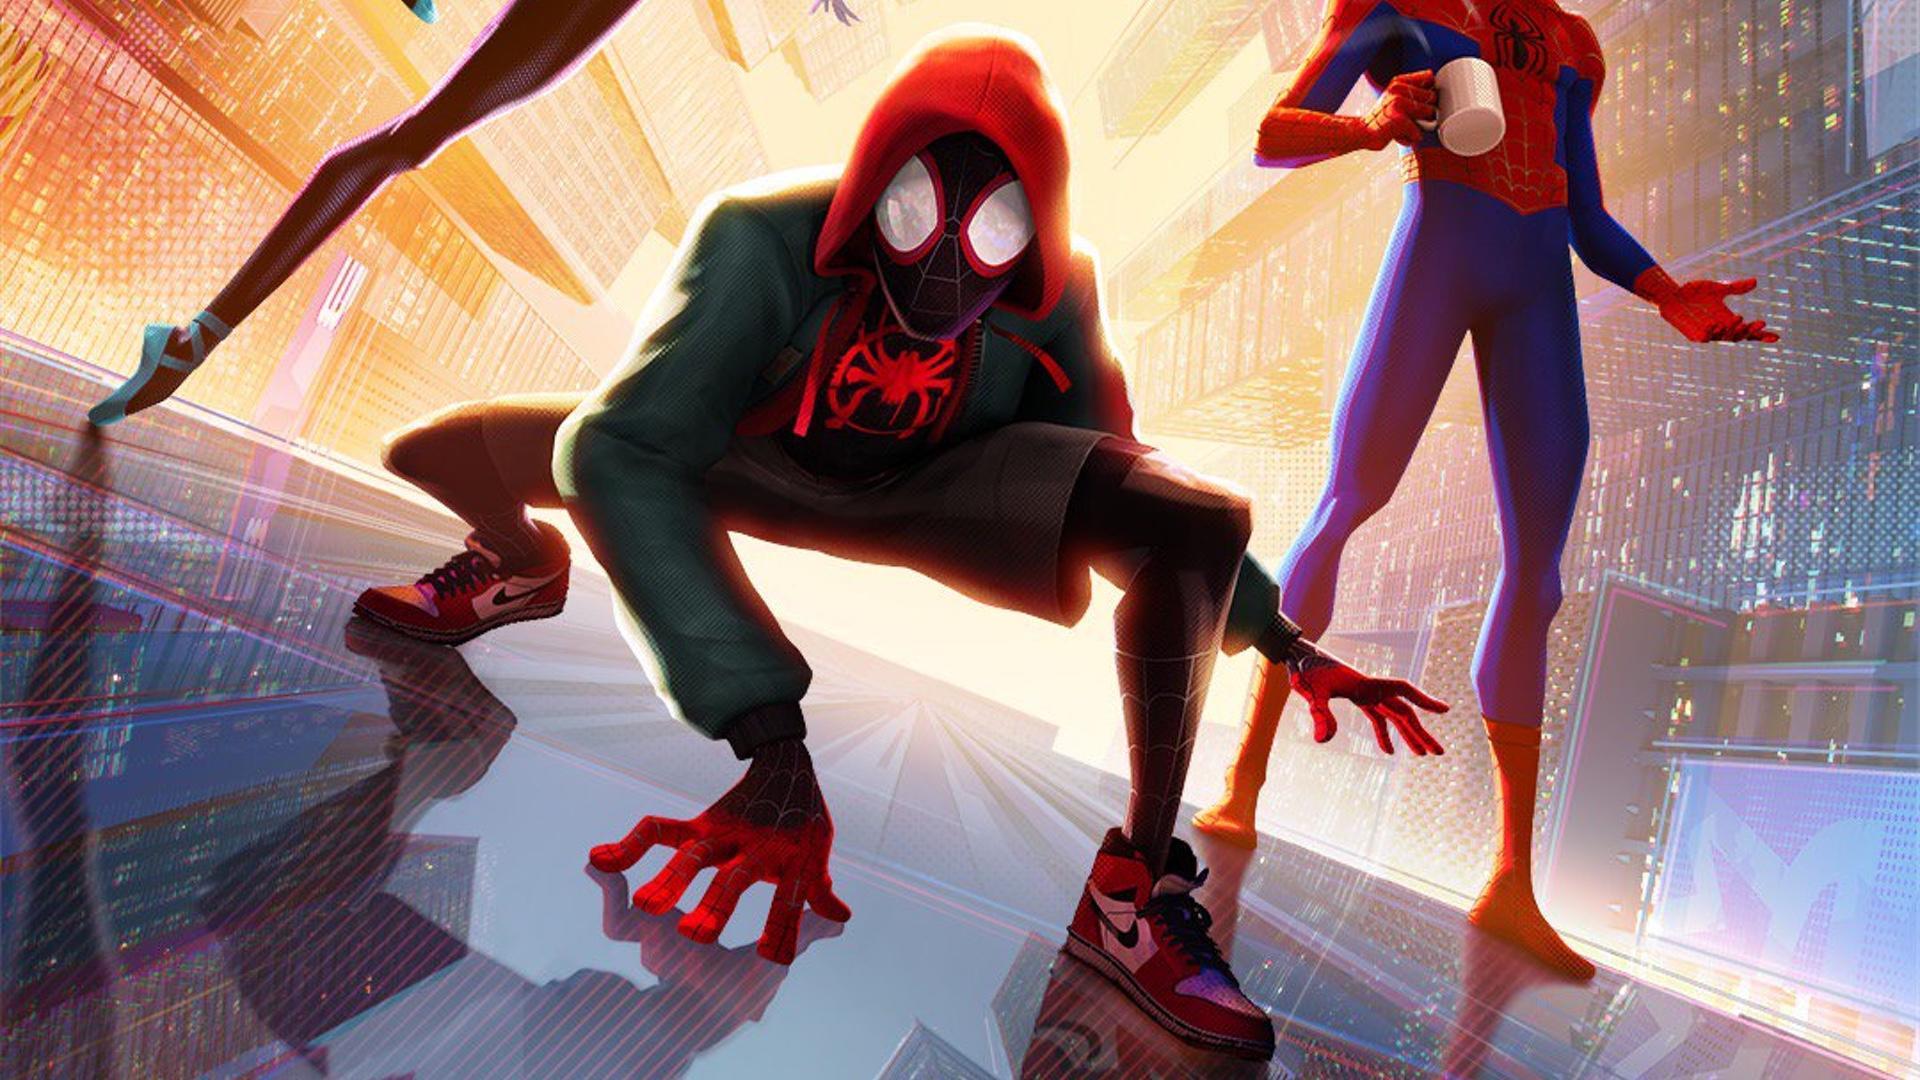 Desafío Desviación novato Spider-Man: Across the Spider-Verse Receives New Air Jordan 1 Shoes